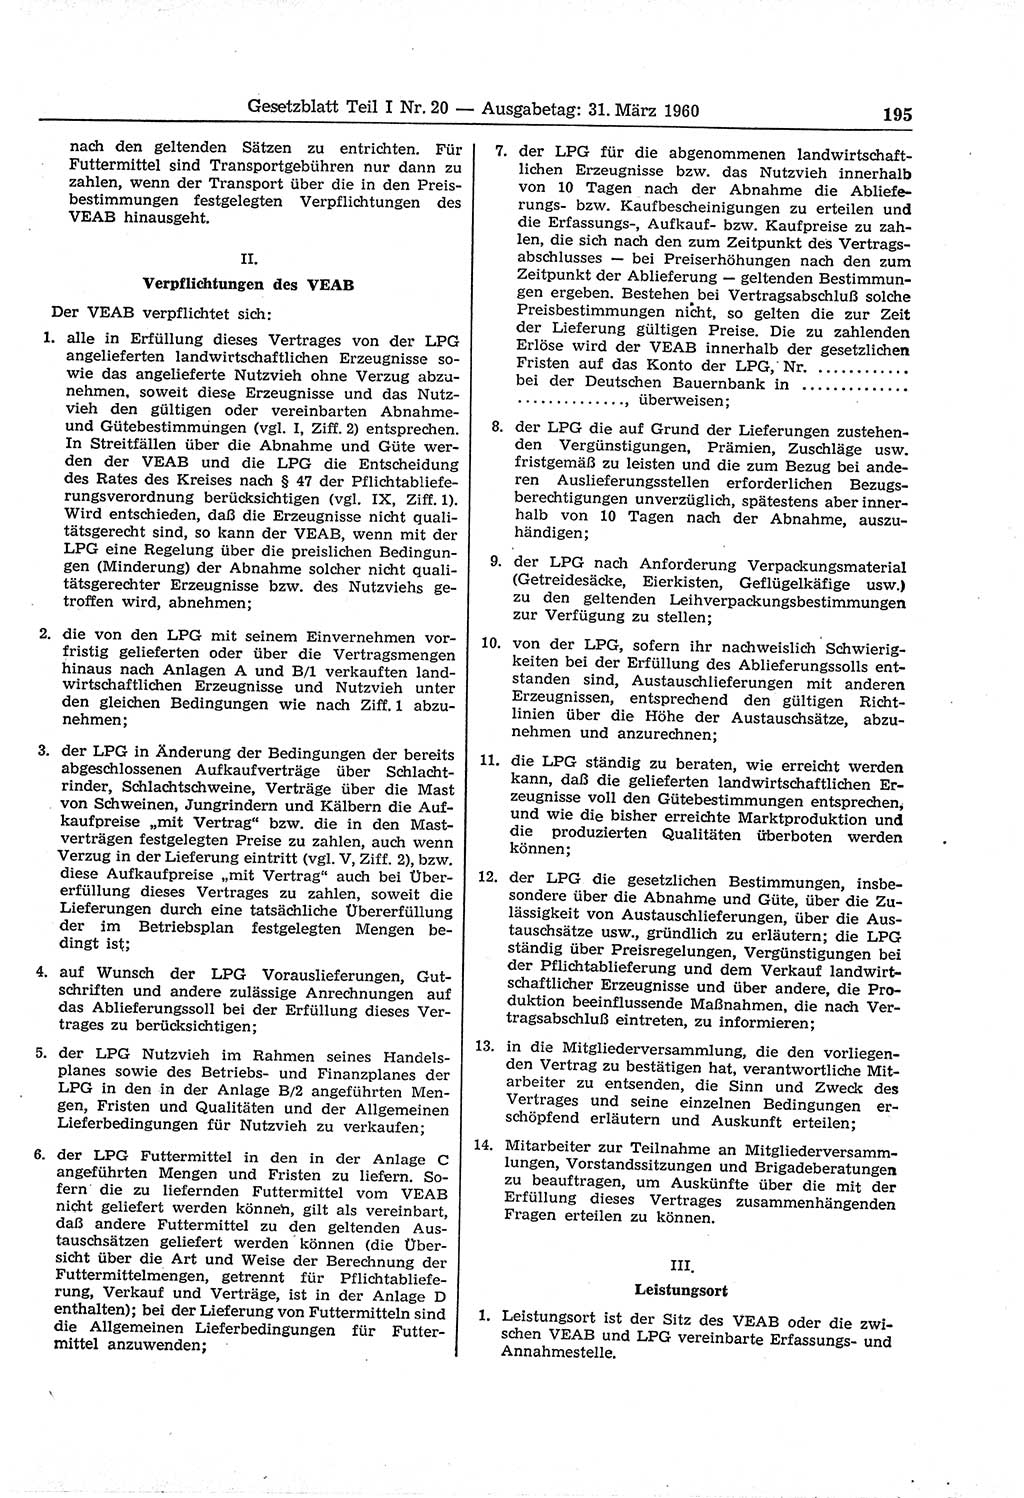 Gesetzblatt (GBl.) der Deutschen Demokratischen Republik (DDR) Teil Ⅰ 1960, Seite 195 (GBl. DDR Ⅰ 1960, S. 195)